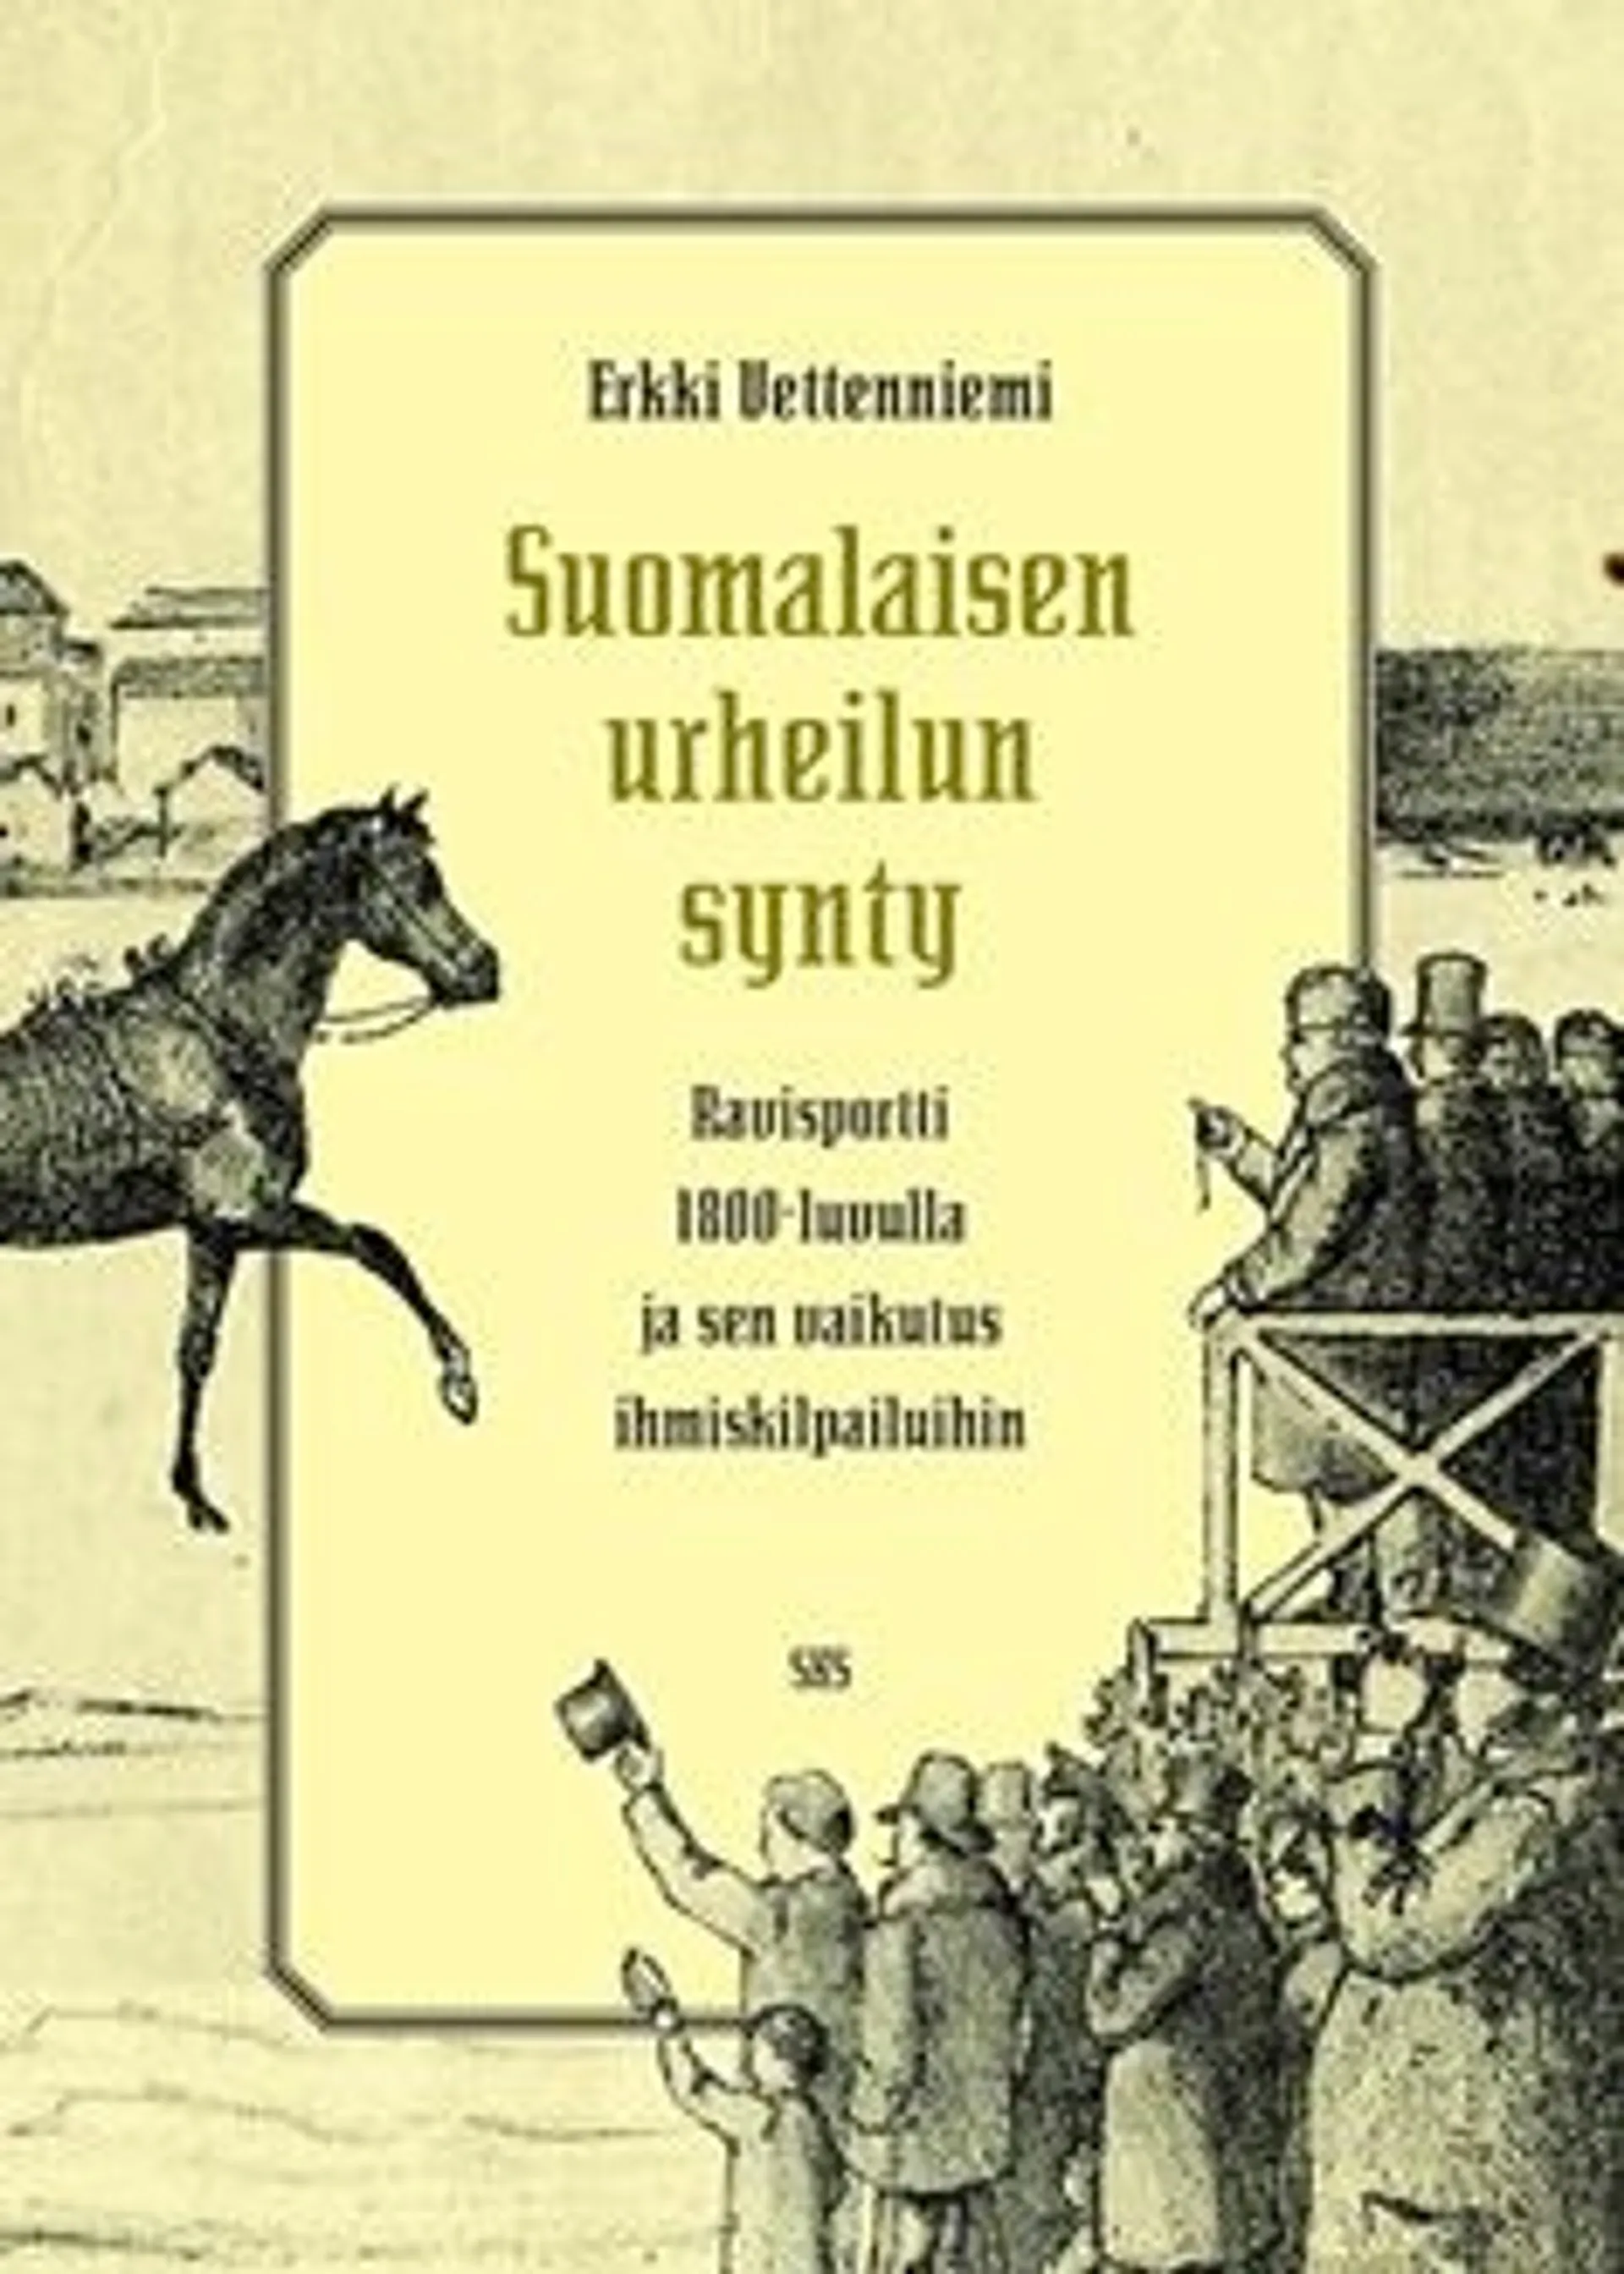 Vettenniemi, Suomalaisen urheilun synty - ravisportti 1800-luvulla ja sen vaikutus ihmiskilpailuihin